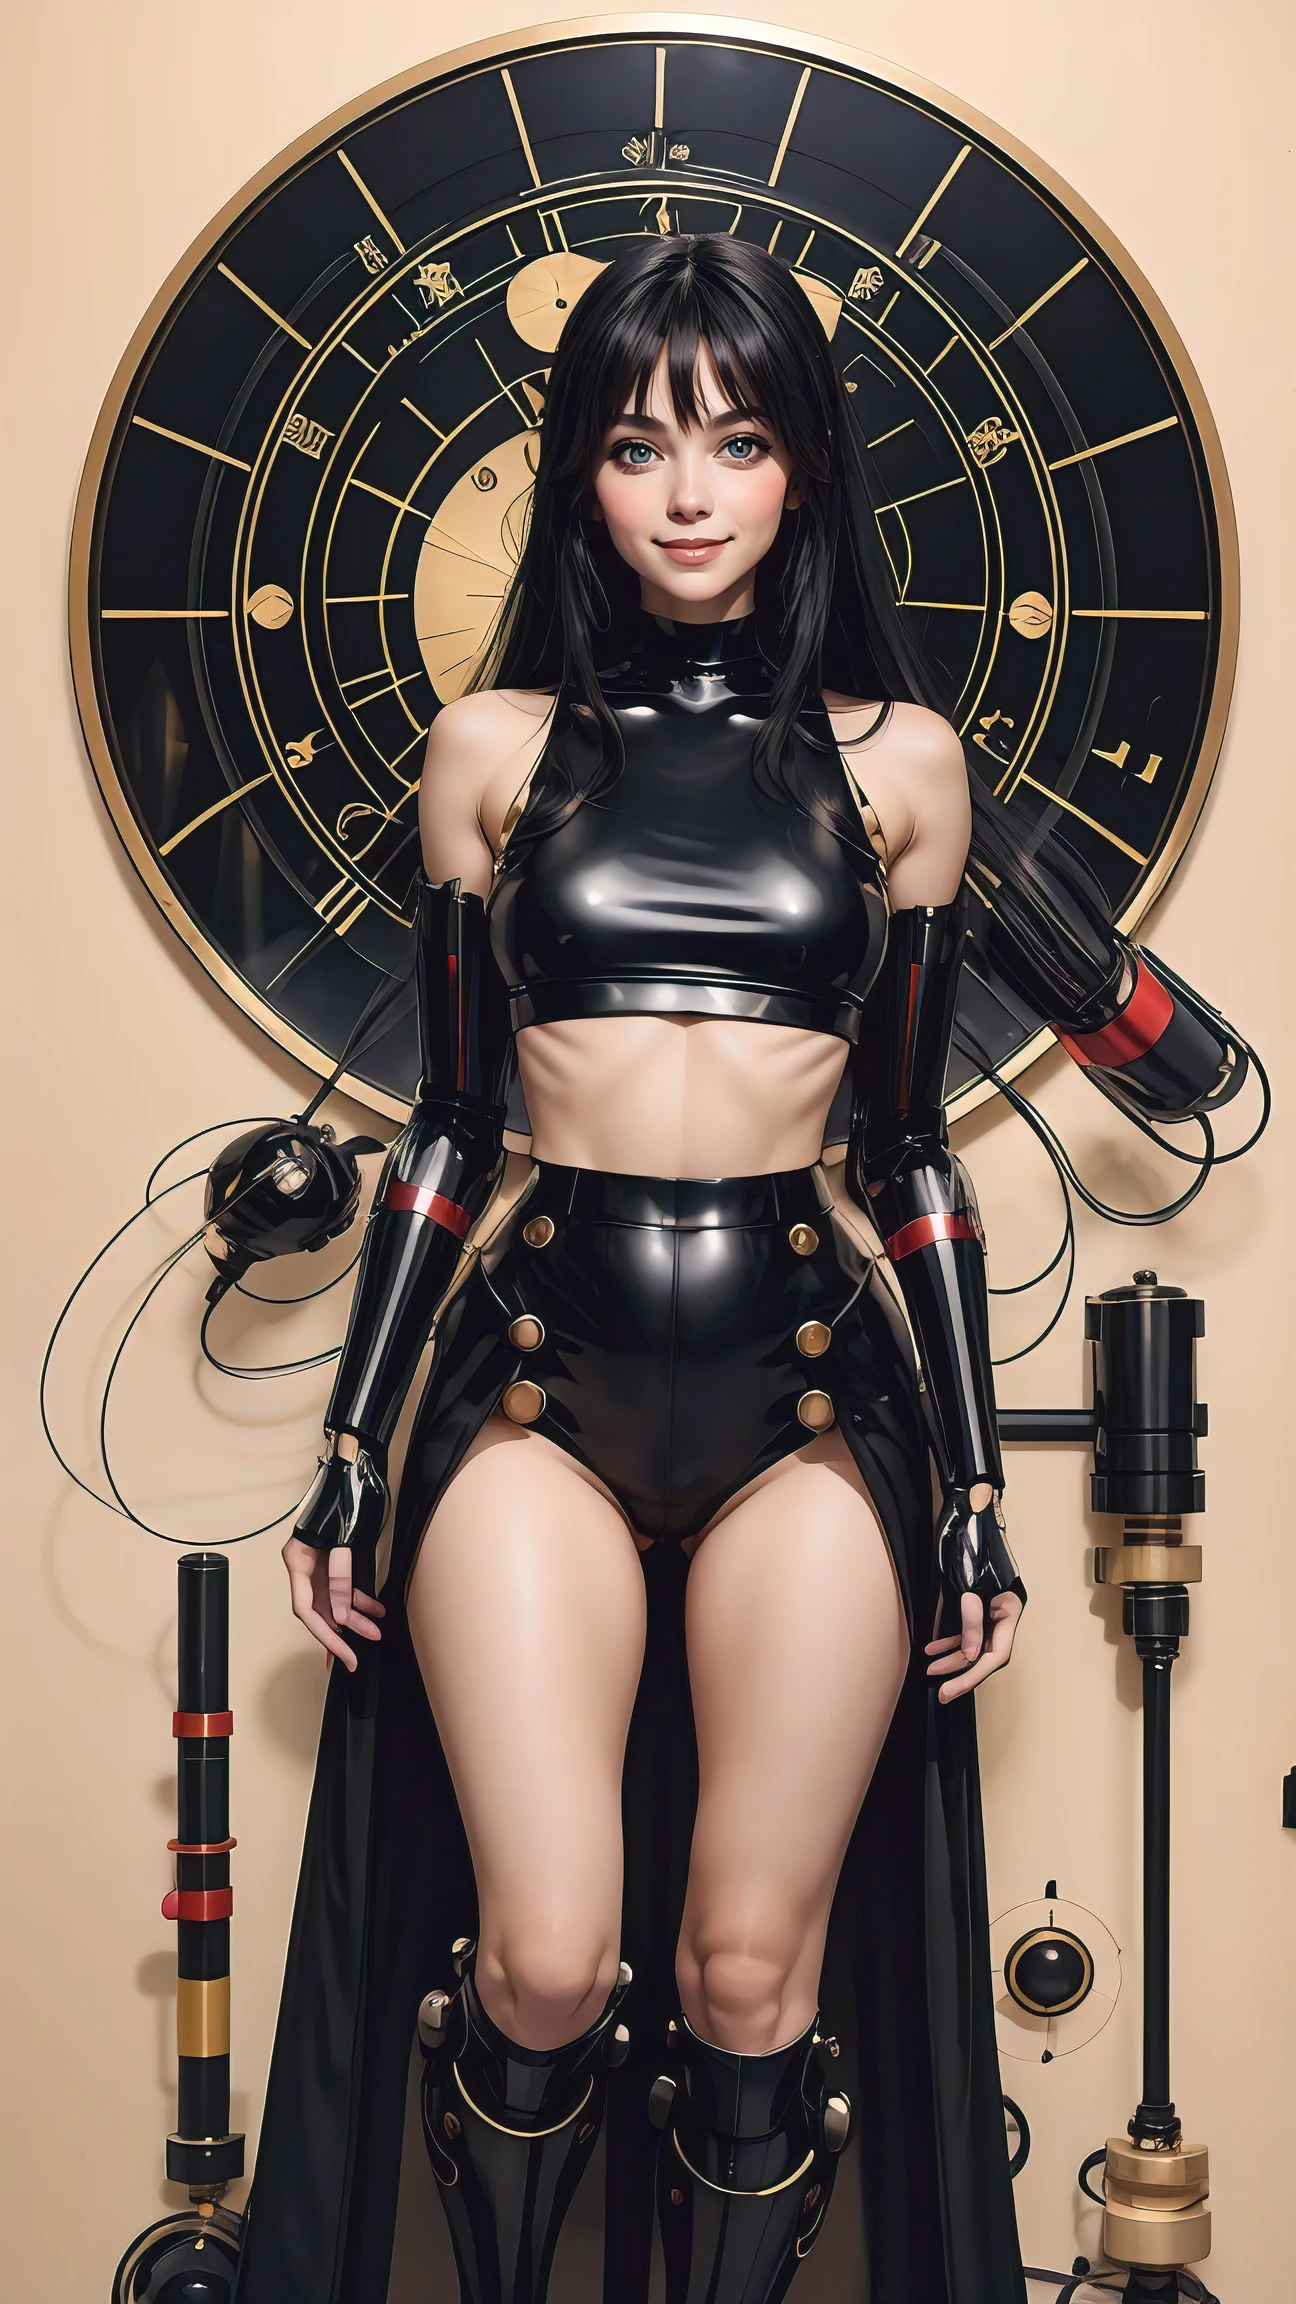 tiro de cuerpo completo ,Moda, surreal, Mujer japonesa vistiendo un top negro corto, Grandes ojos marrones , cuerpo mezclado con un robot, pelo negro muy largo ,animado ,